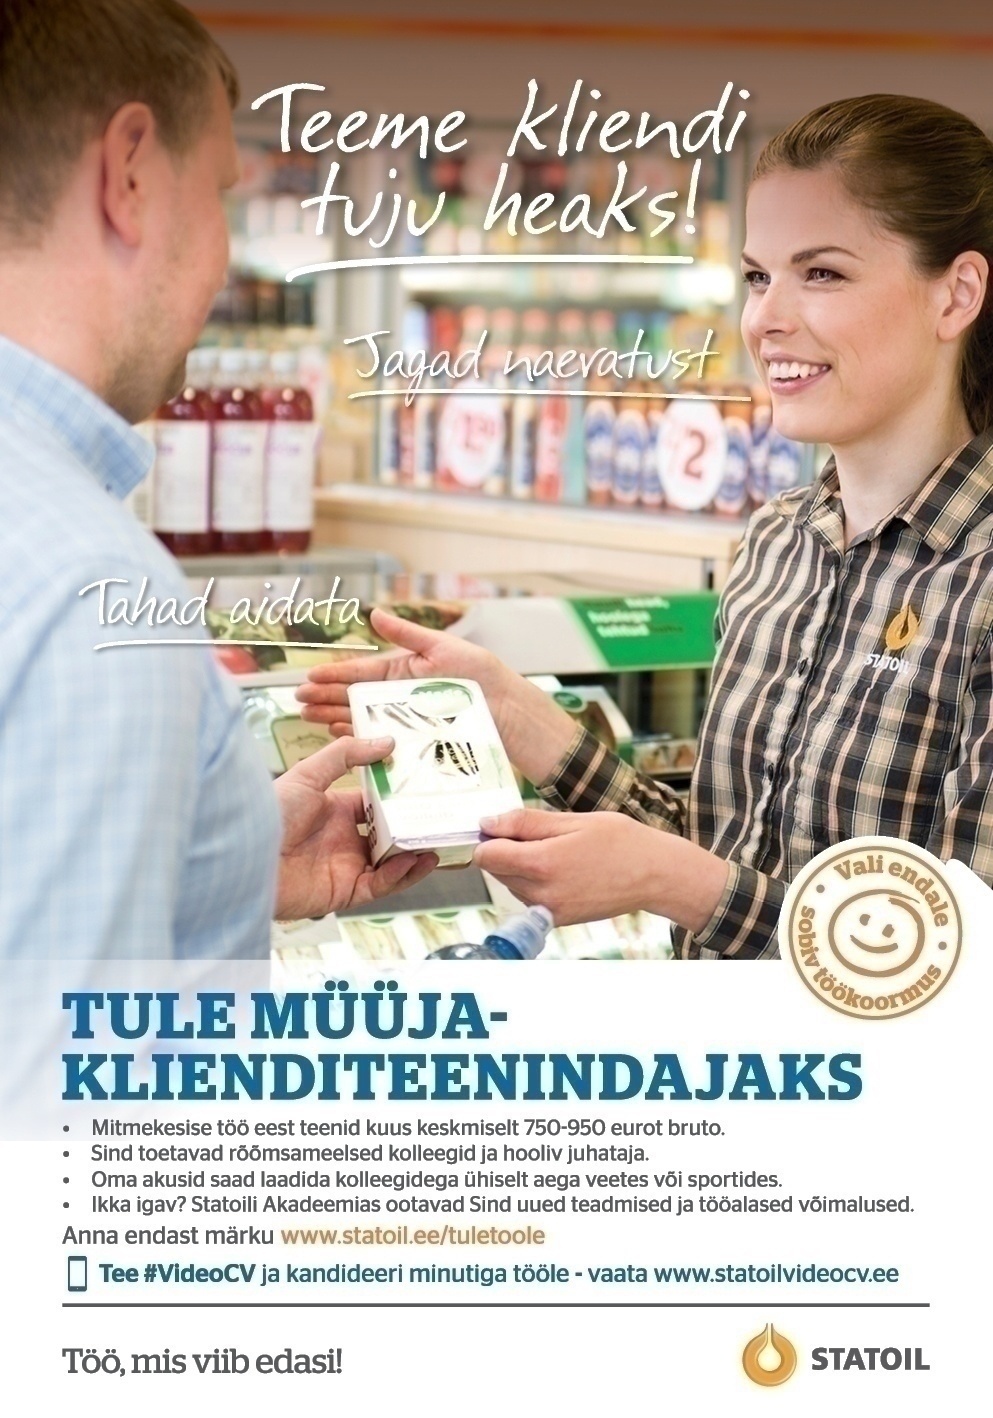 Circle K Eesti AS Müüja-klienditeenindaja Tallinna Laagri ja Järve teenindusjaamadesse